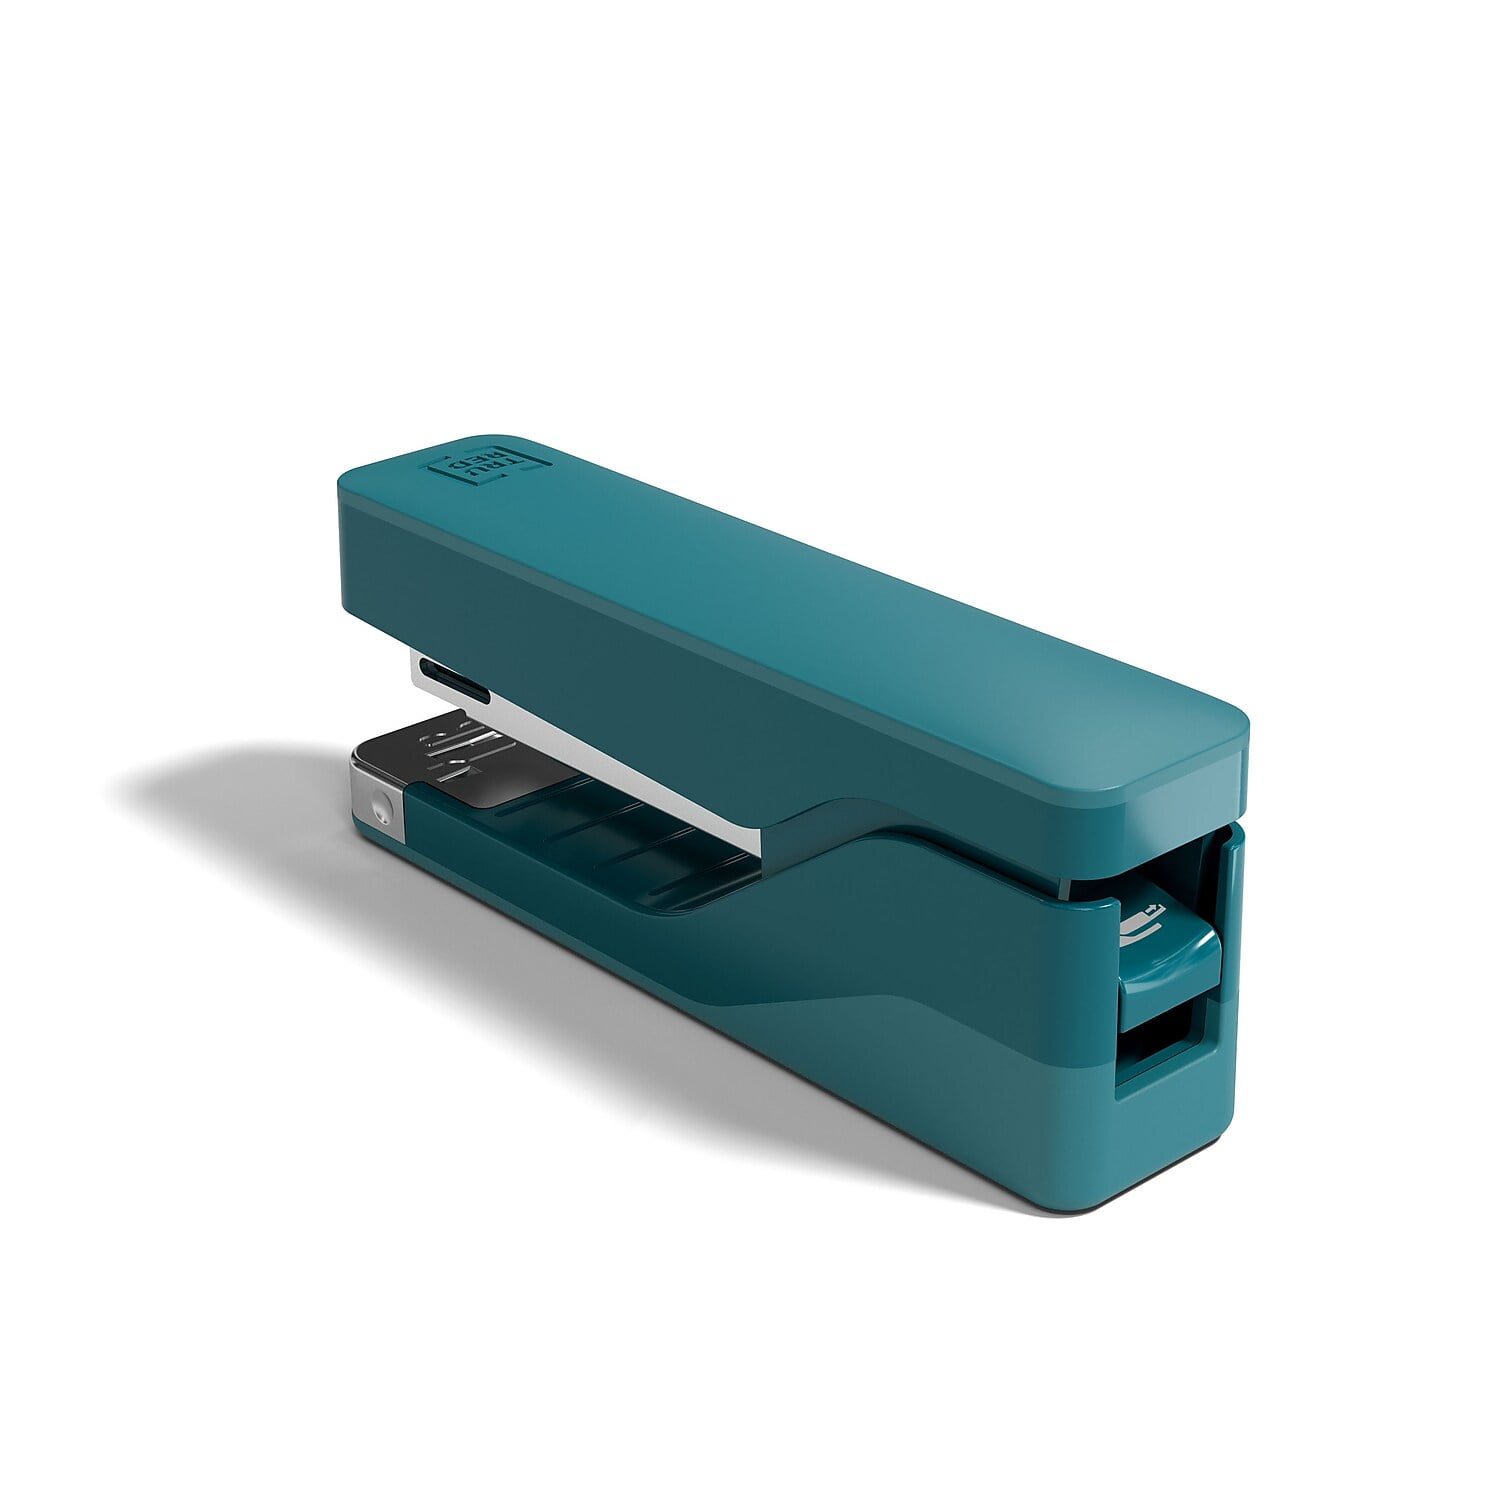 Stapler Office Stapler Stapler For Desk Portable Durable - Temu